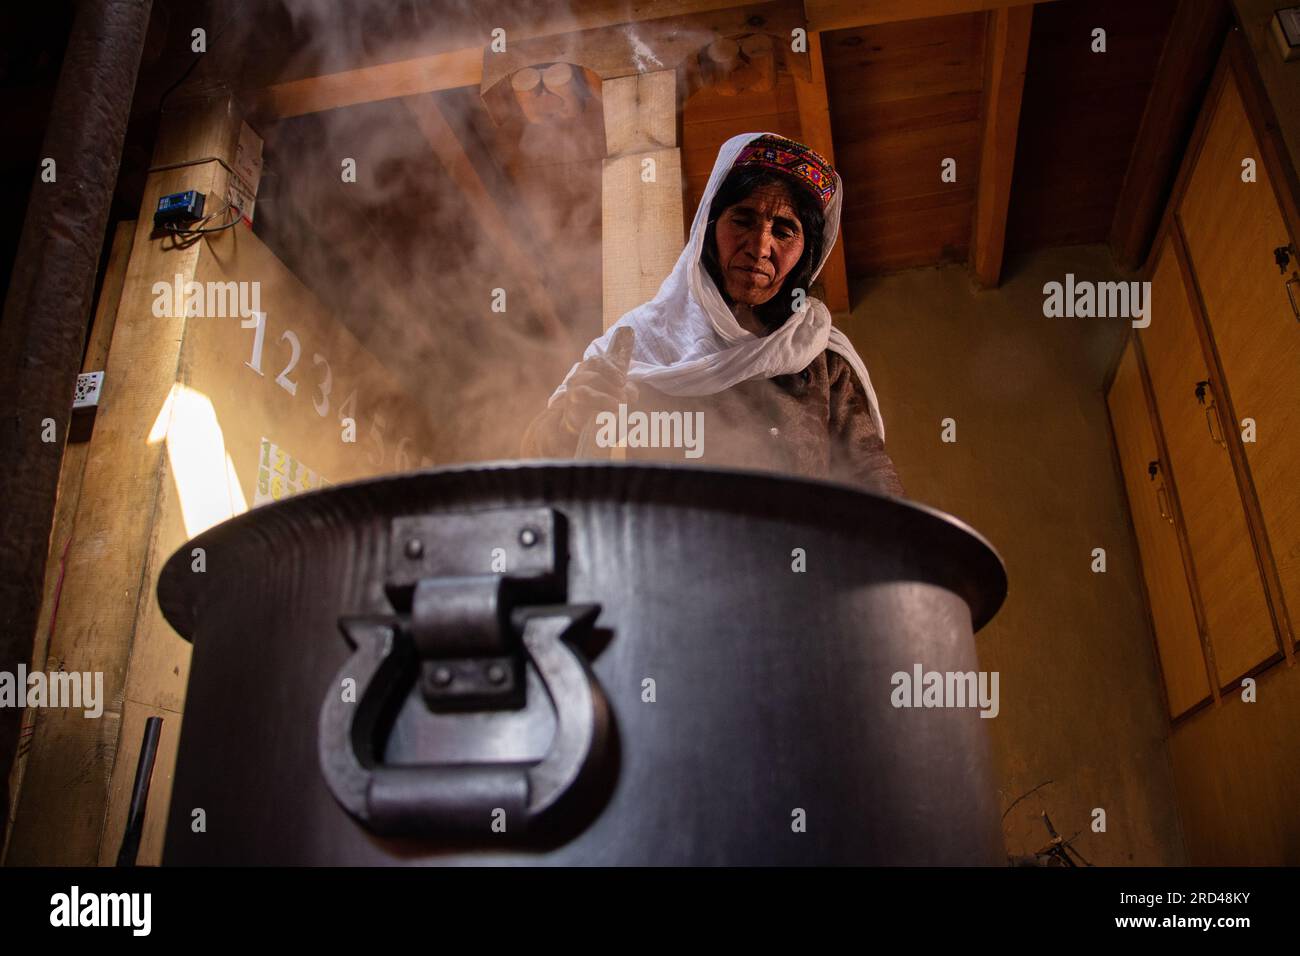 Una donna mescola una pentola di grano fermentato per 8 ore, rendendo seman prima del primo giorno di festa primaverile nella valle di Shimshal, nel nord del Pakistan. Foto Stock